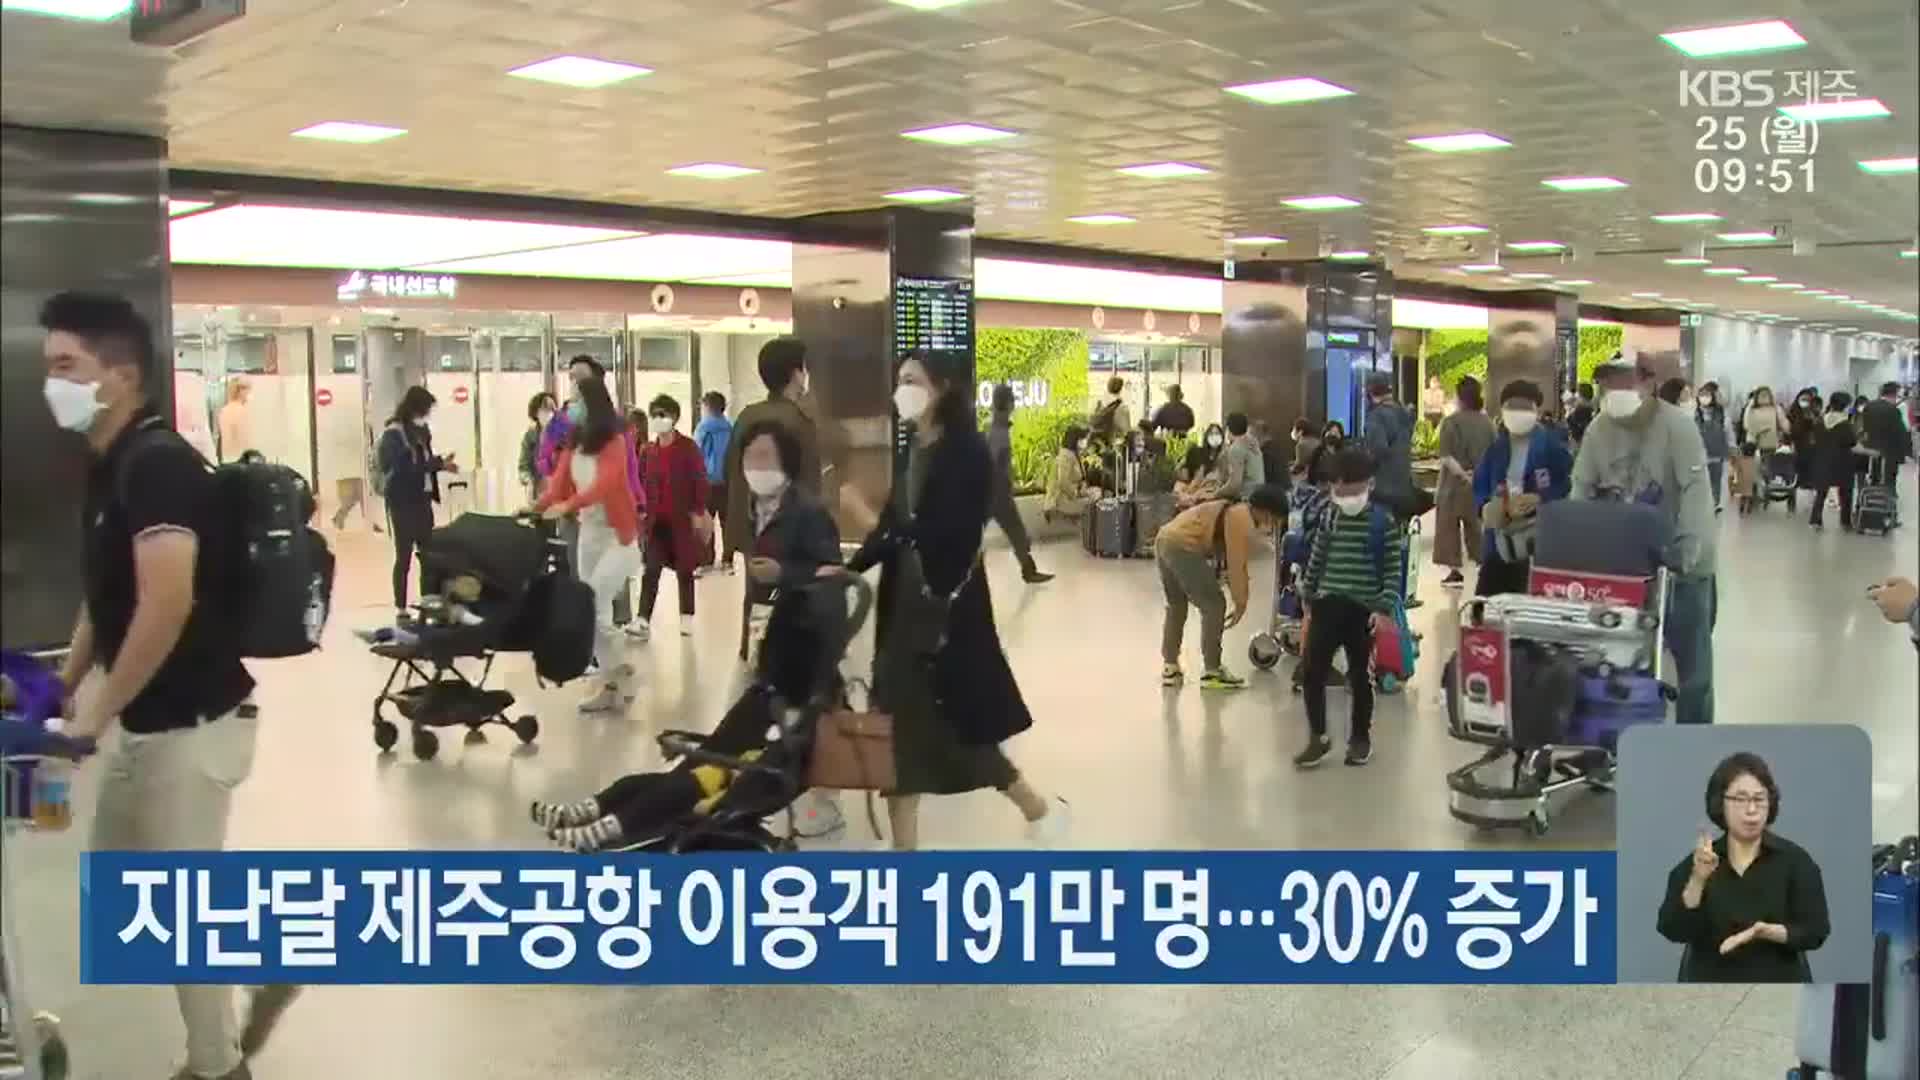 지난달 제주공항 이용객 191만 명…30% 증가